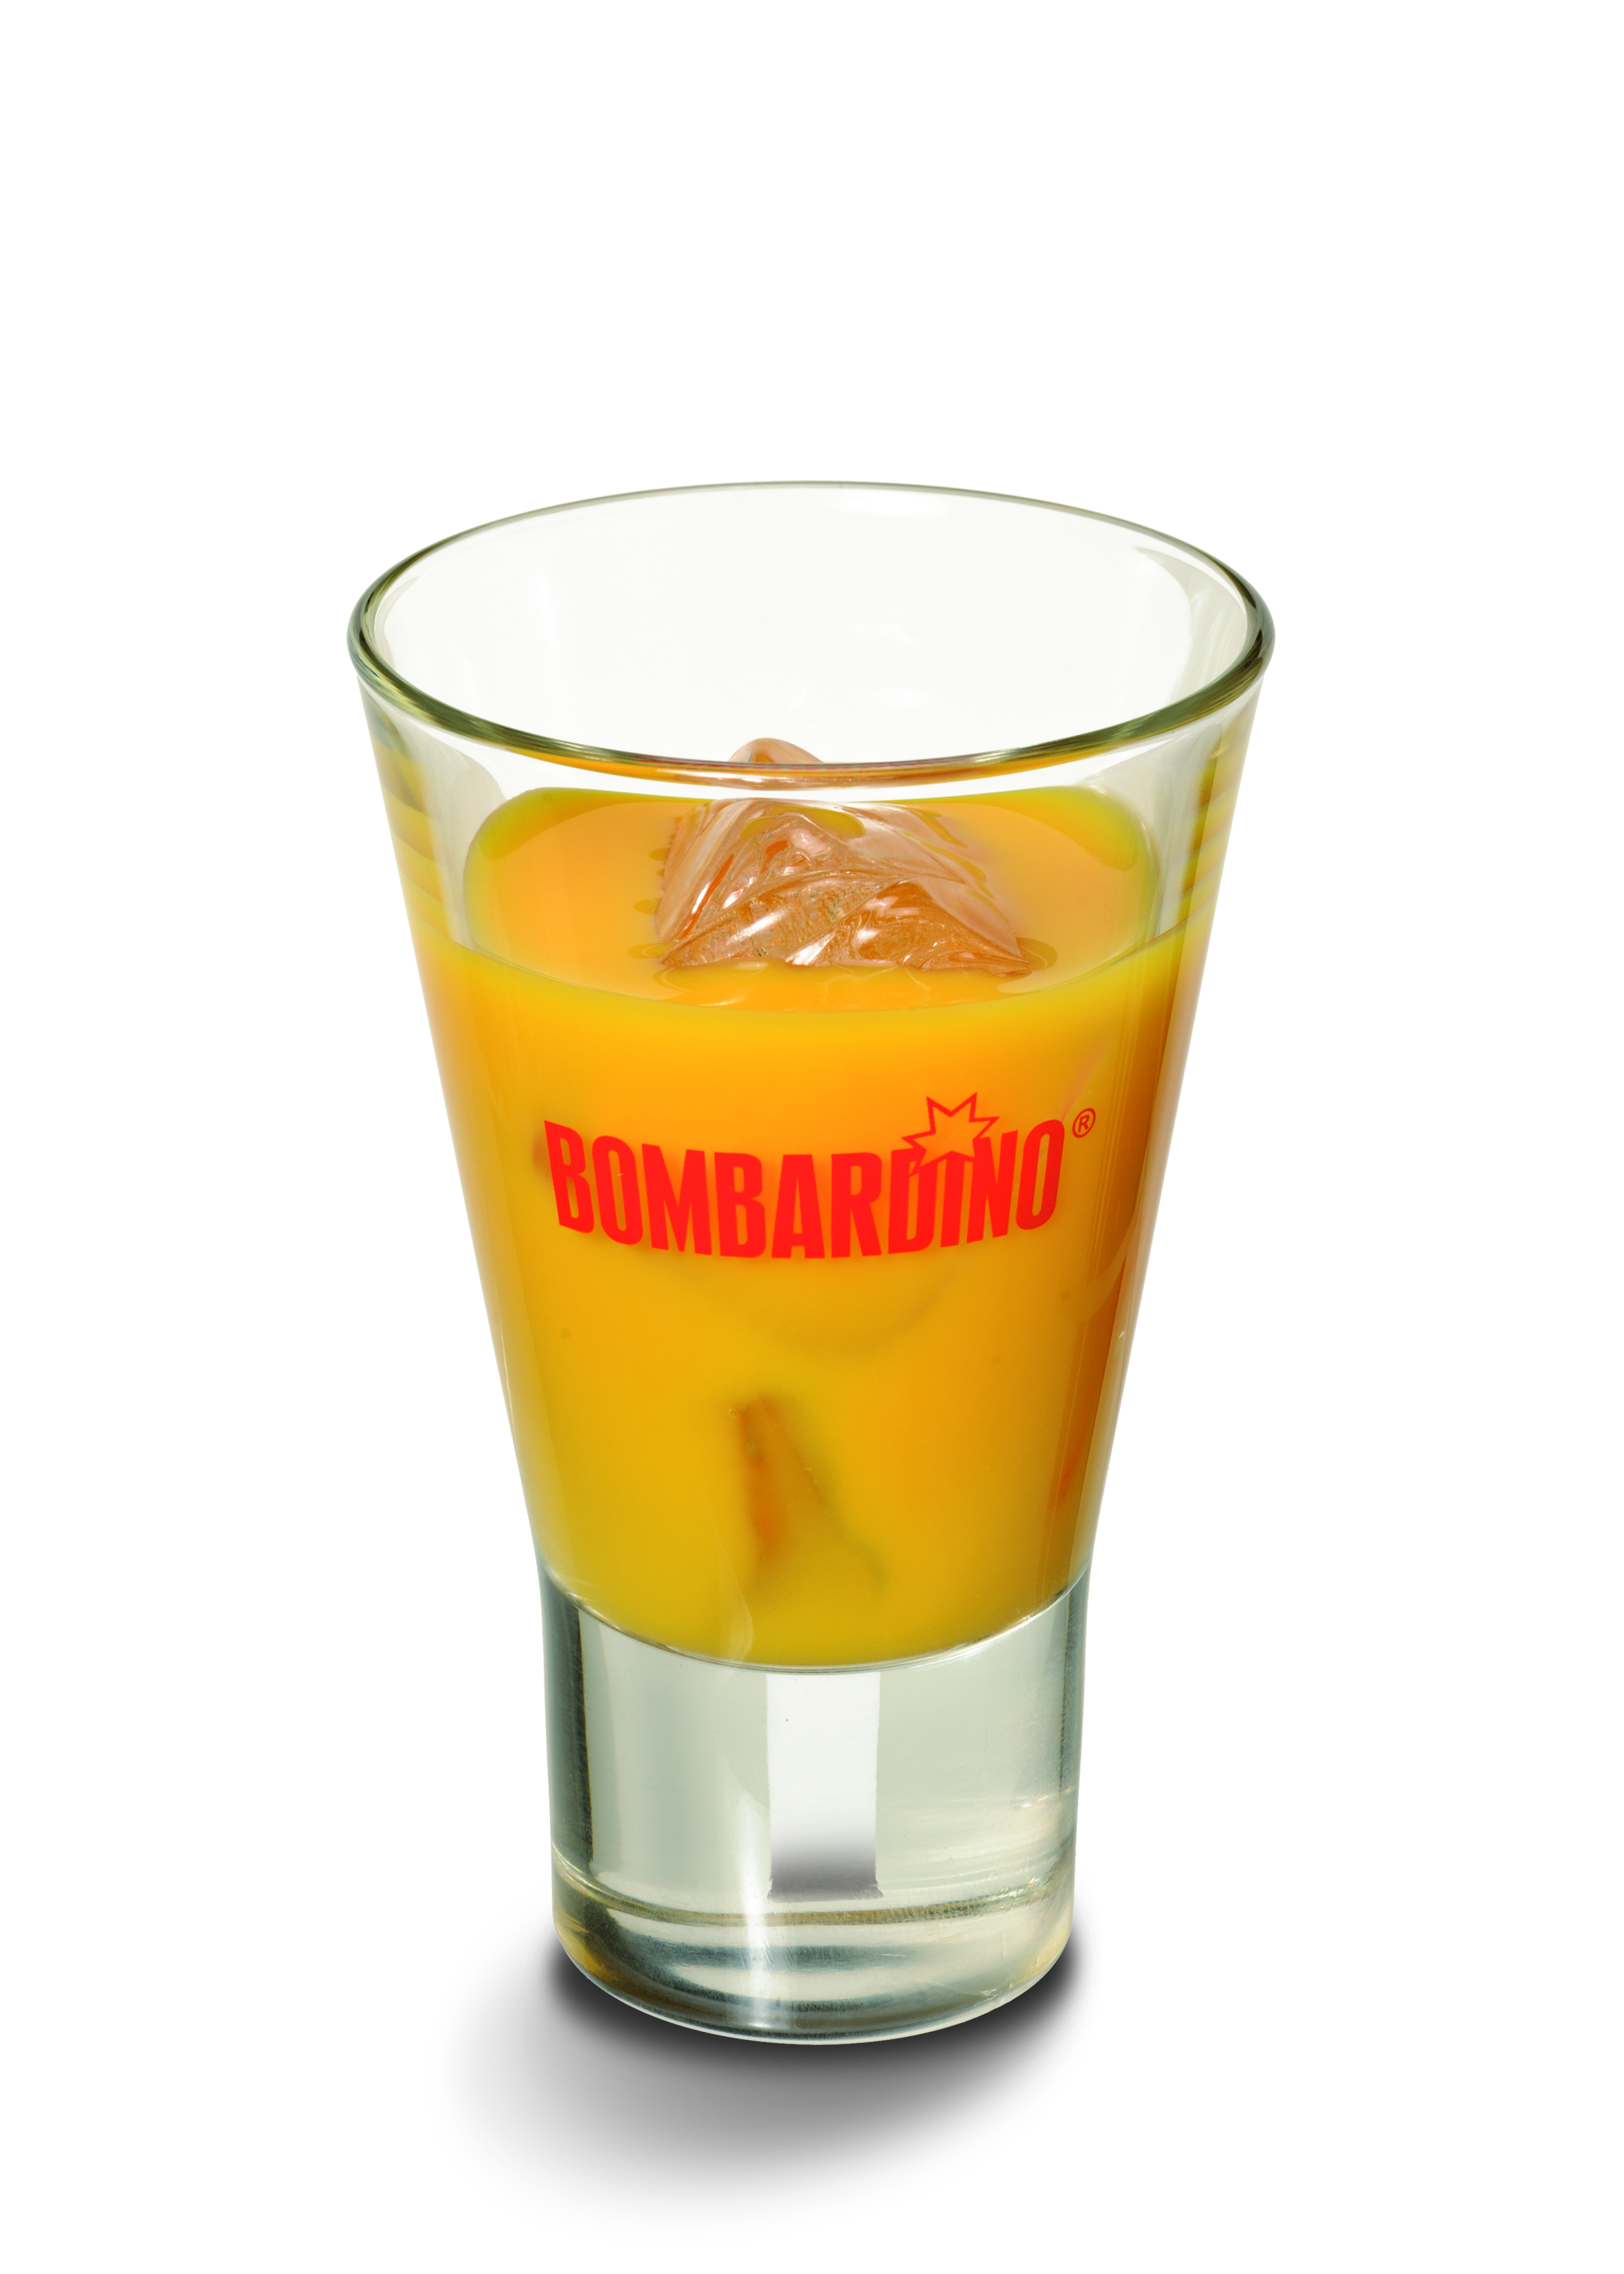 Bicchiere per Bombardino (confezione da 6 bicchieri)